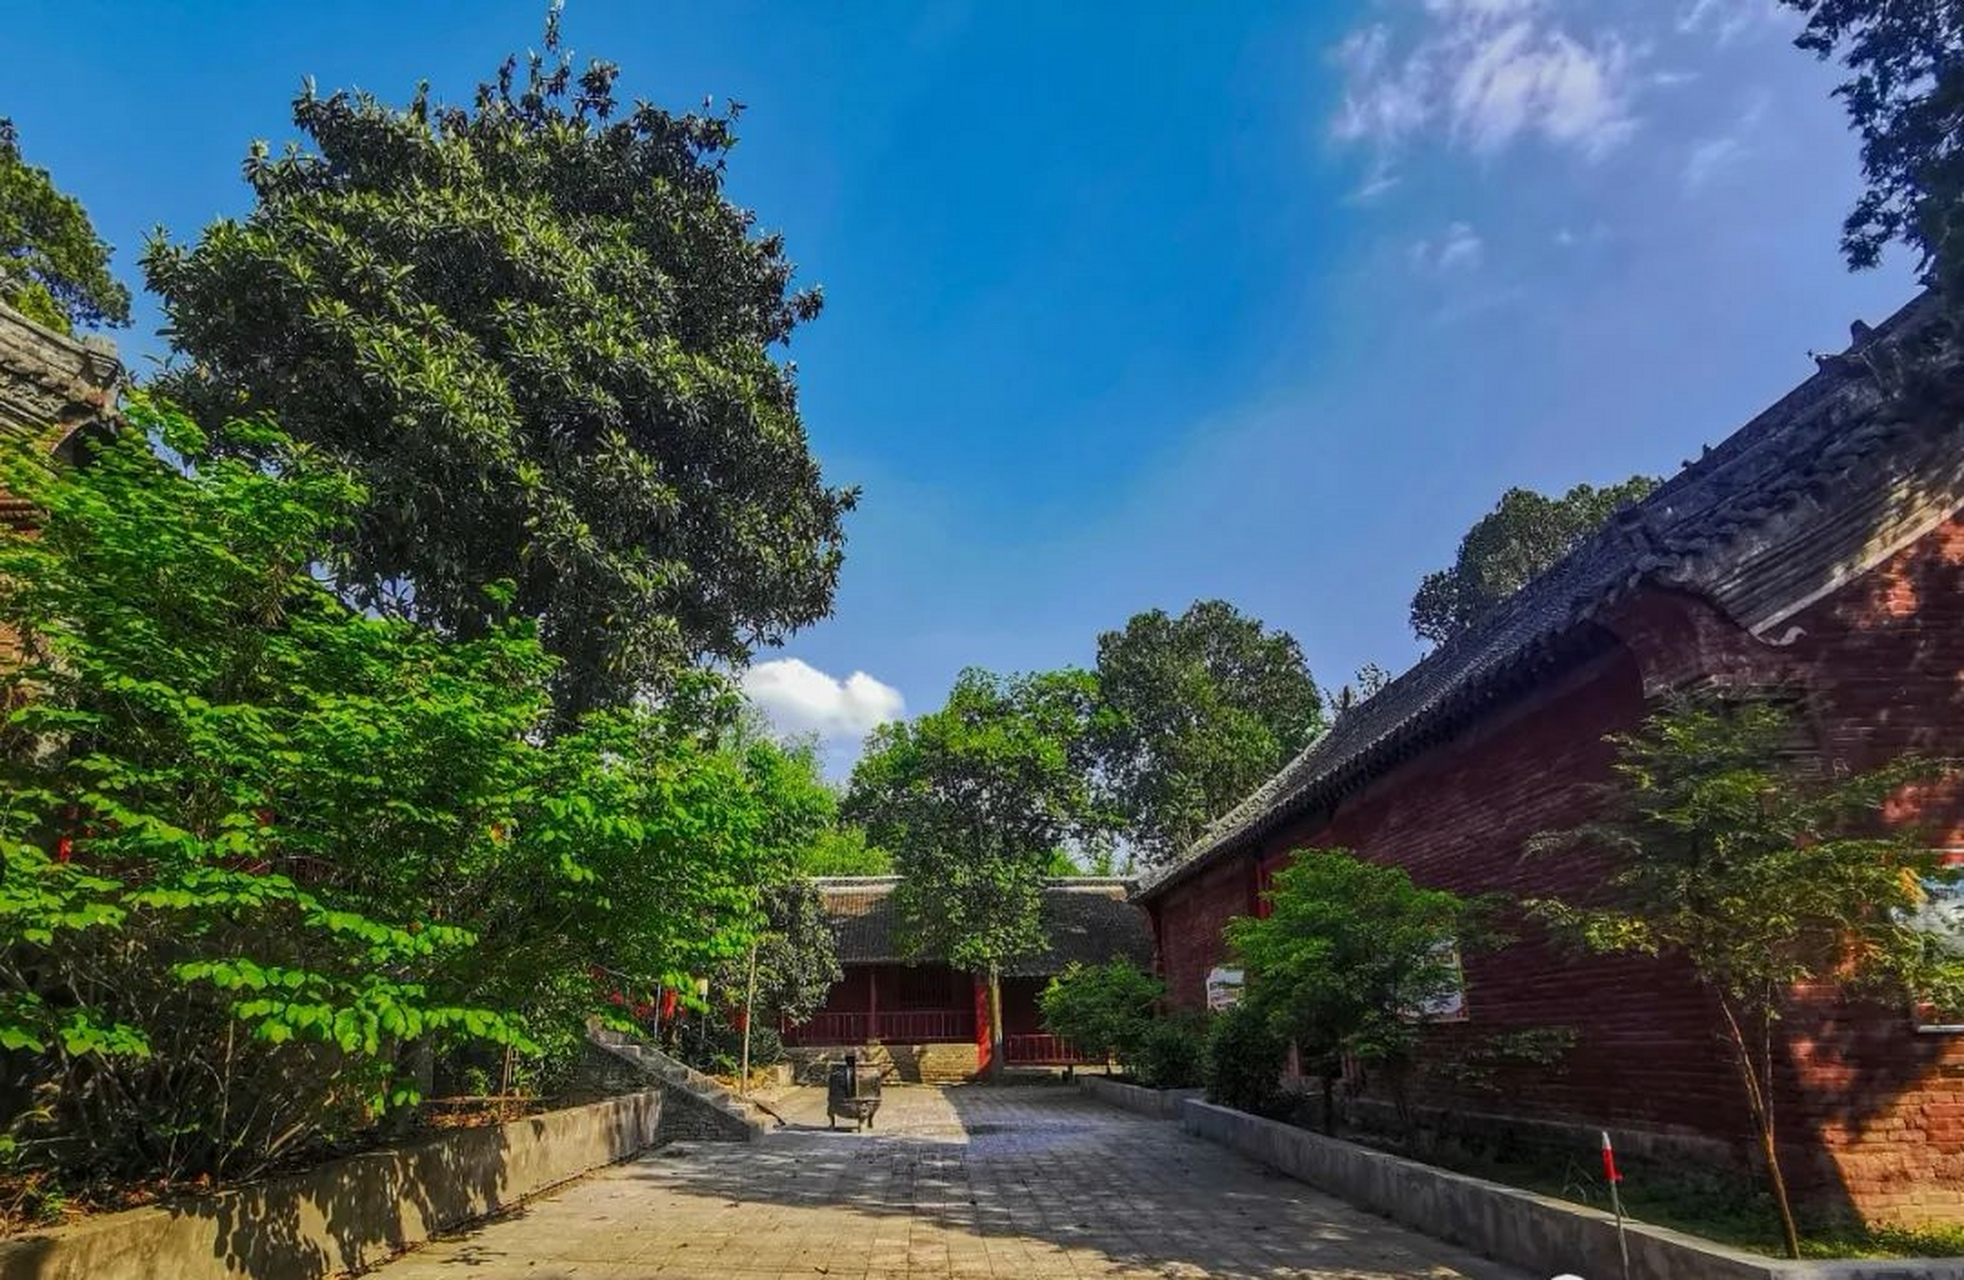 丹霞寺于唐长庆四年(824年)由天然禅师始建,取名